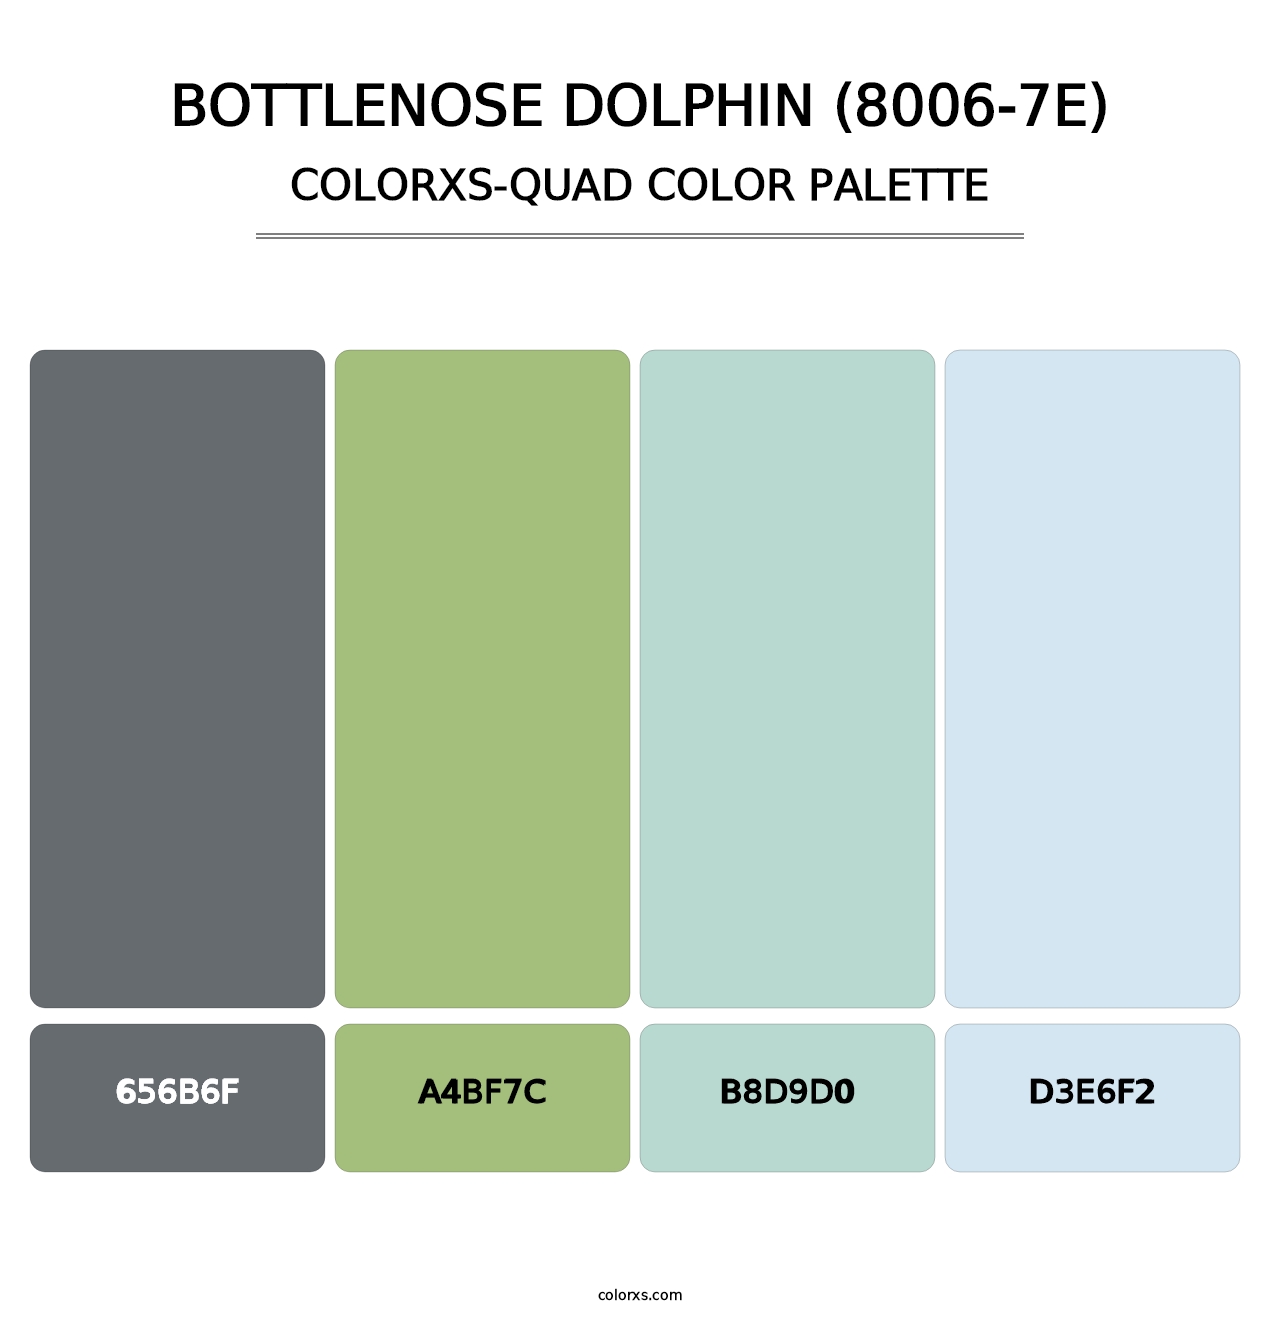 Bottlenose Dolphin (8006-7E) - Colorxs Quad Palette